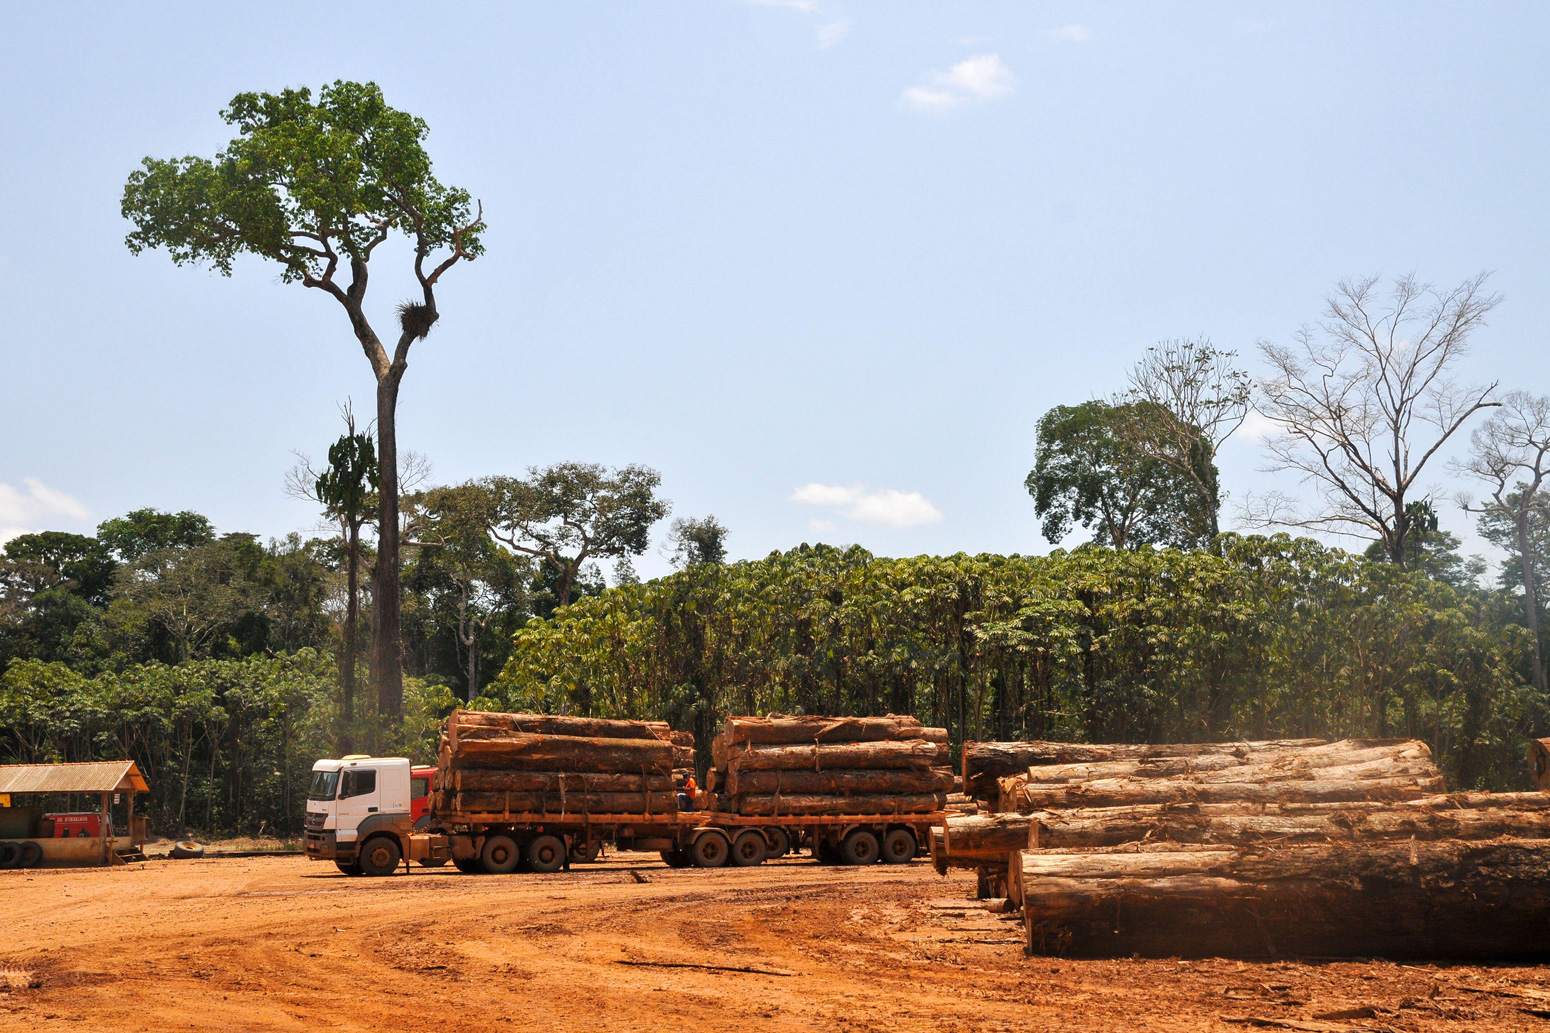 Logging activities in the Brazilian rainforest